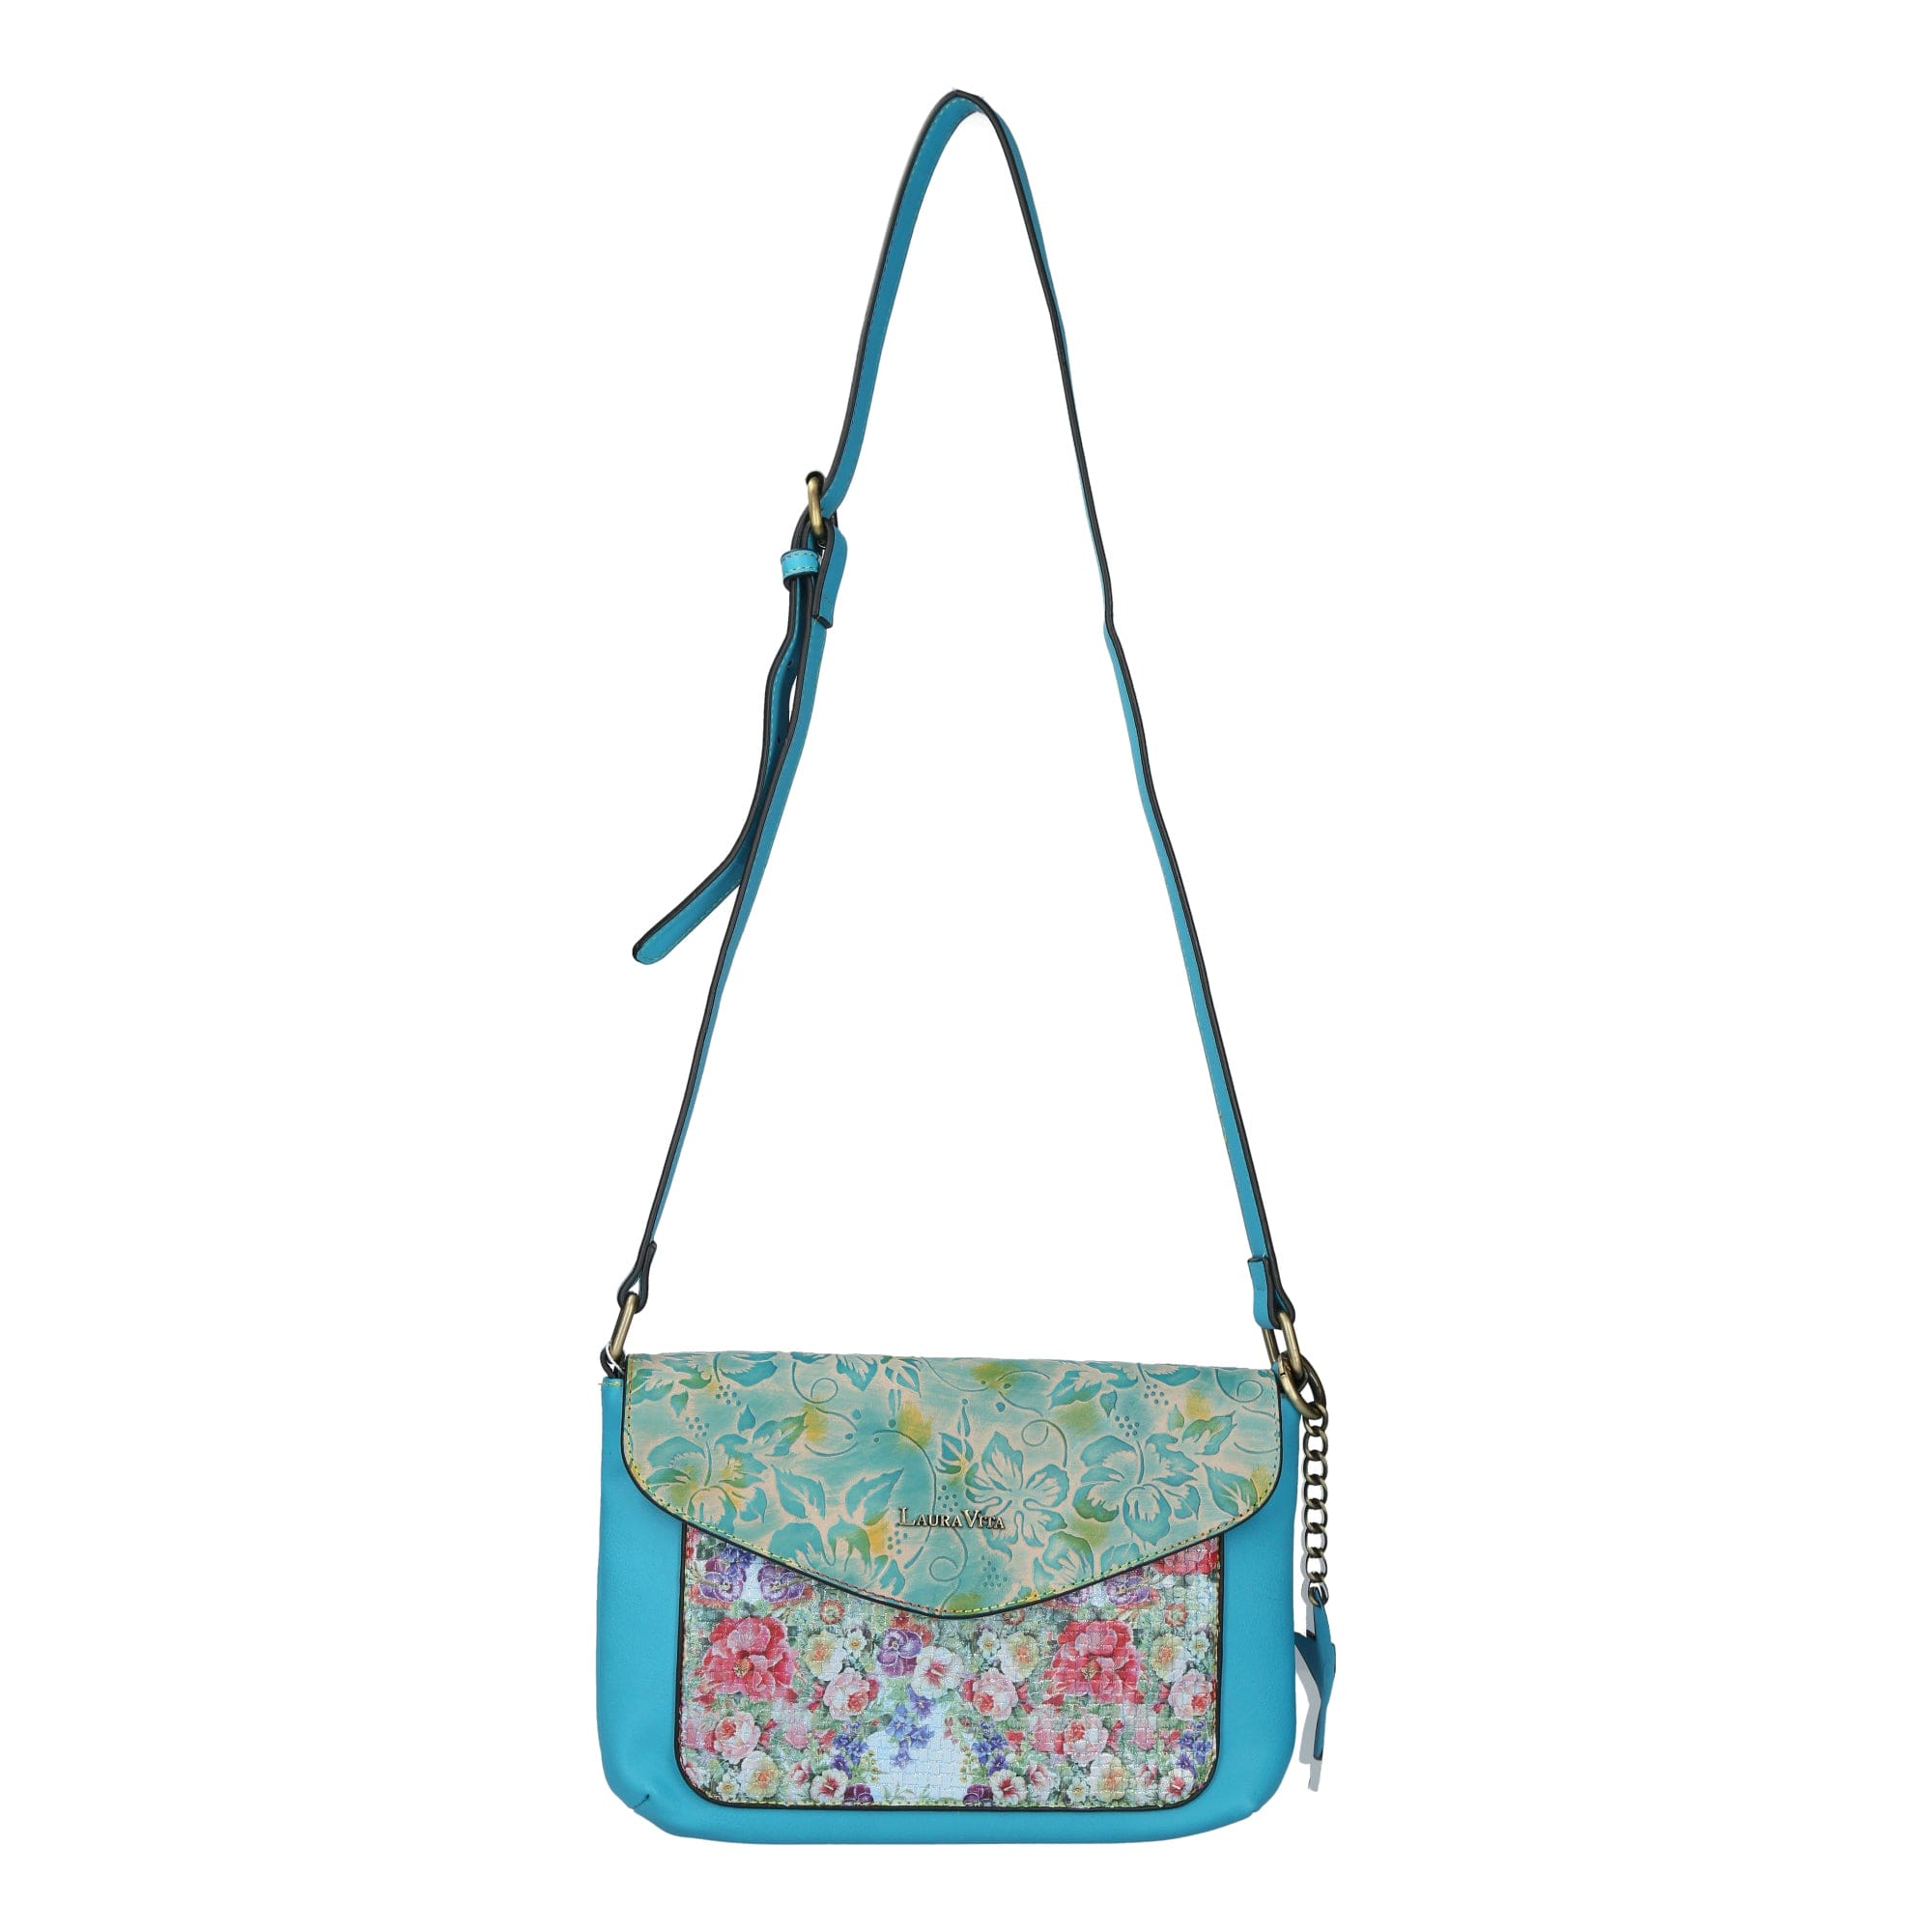 Handbag 4813 - Turquoise - Bag